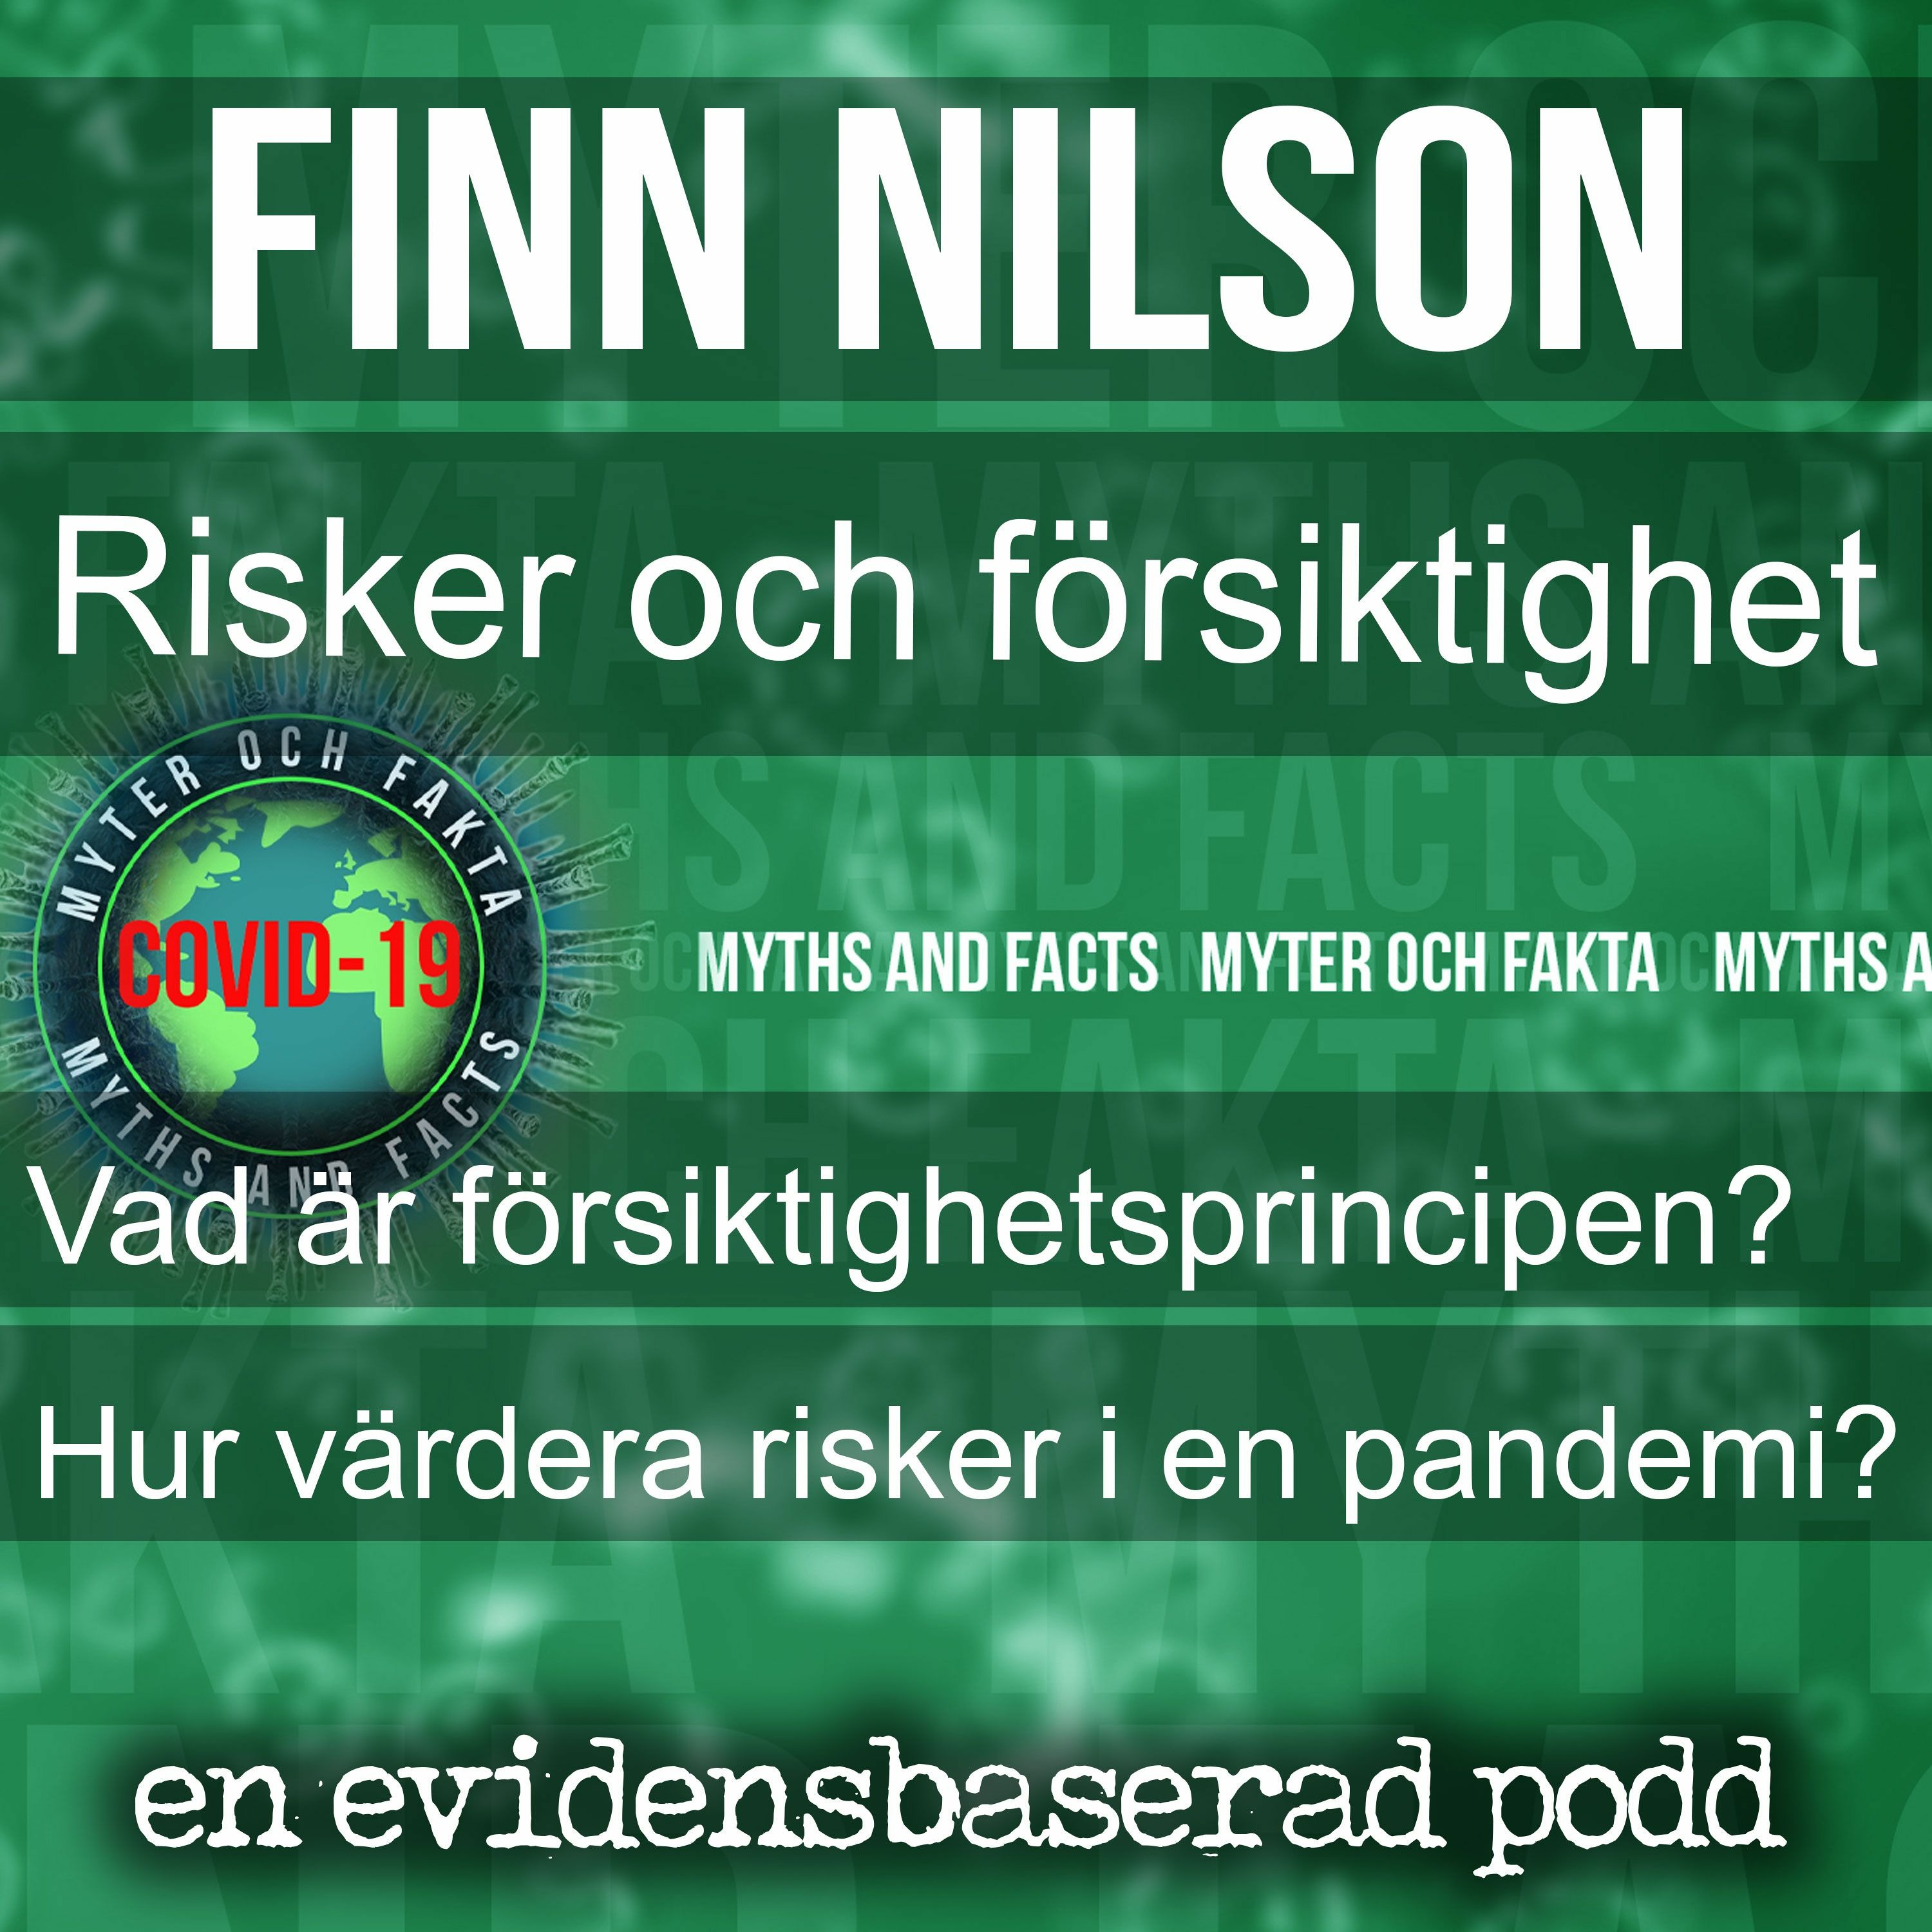 Risker och försiktighetsprincipen med Finn Nilson